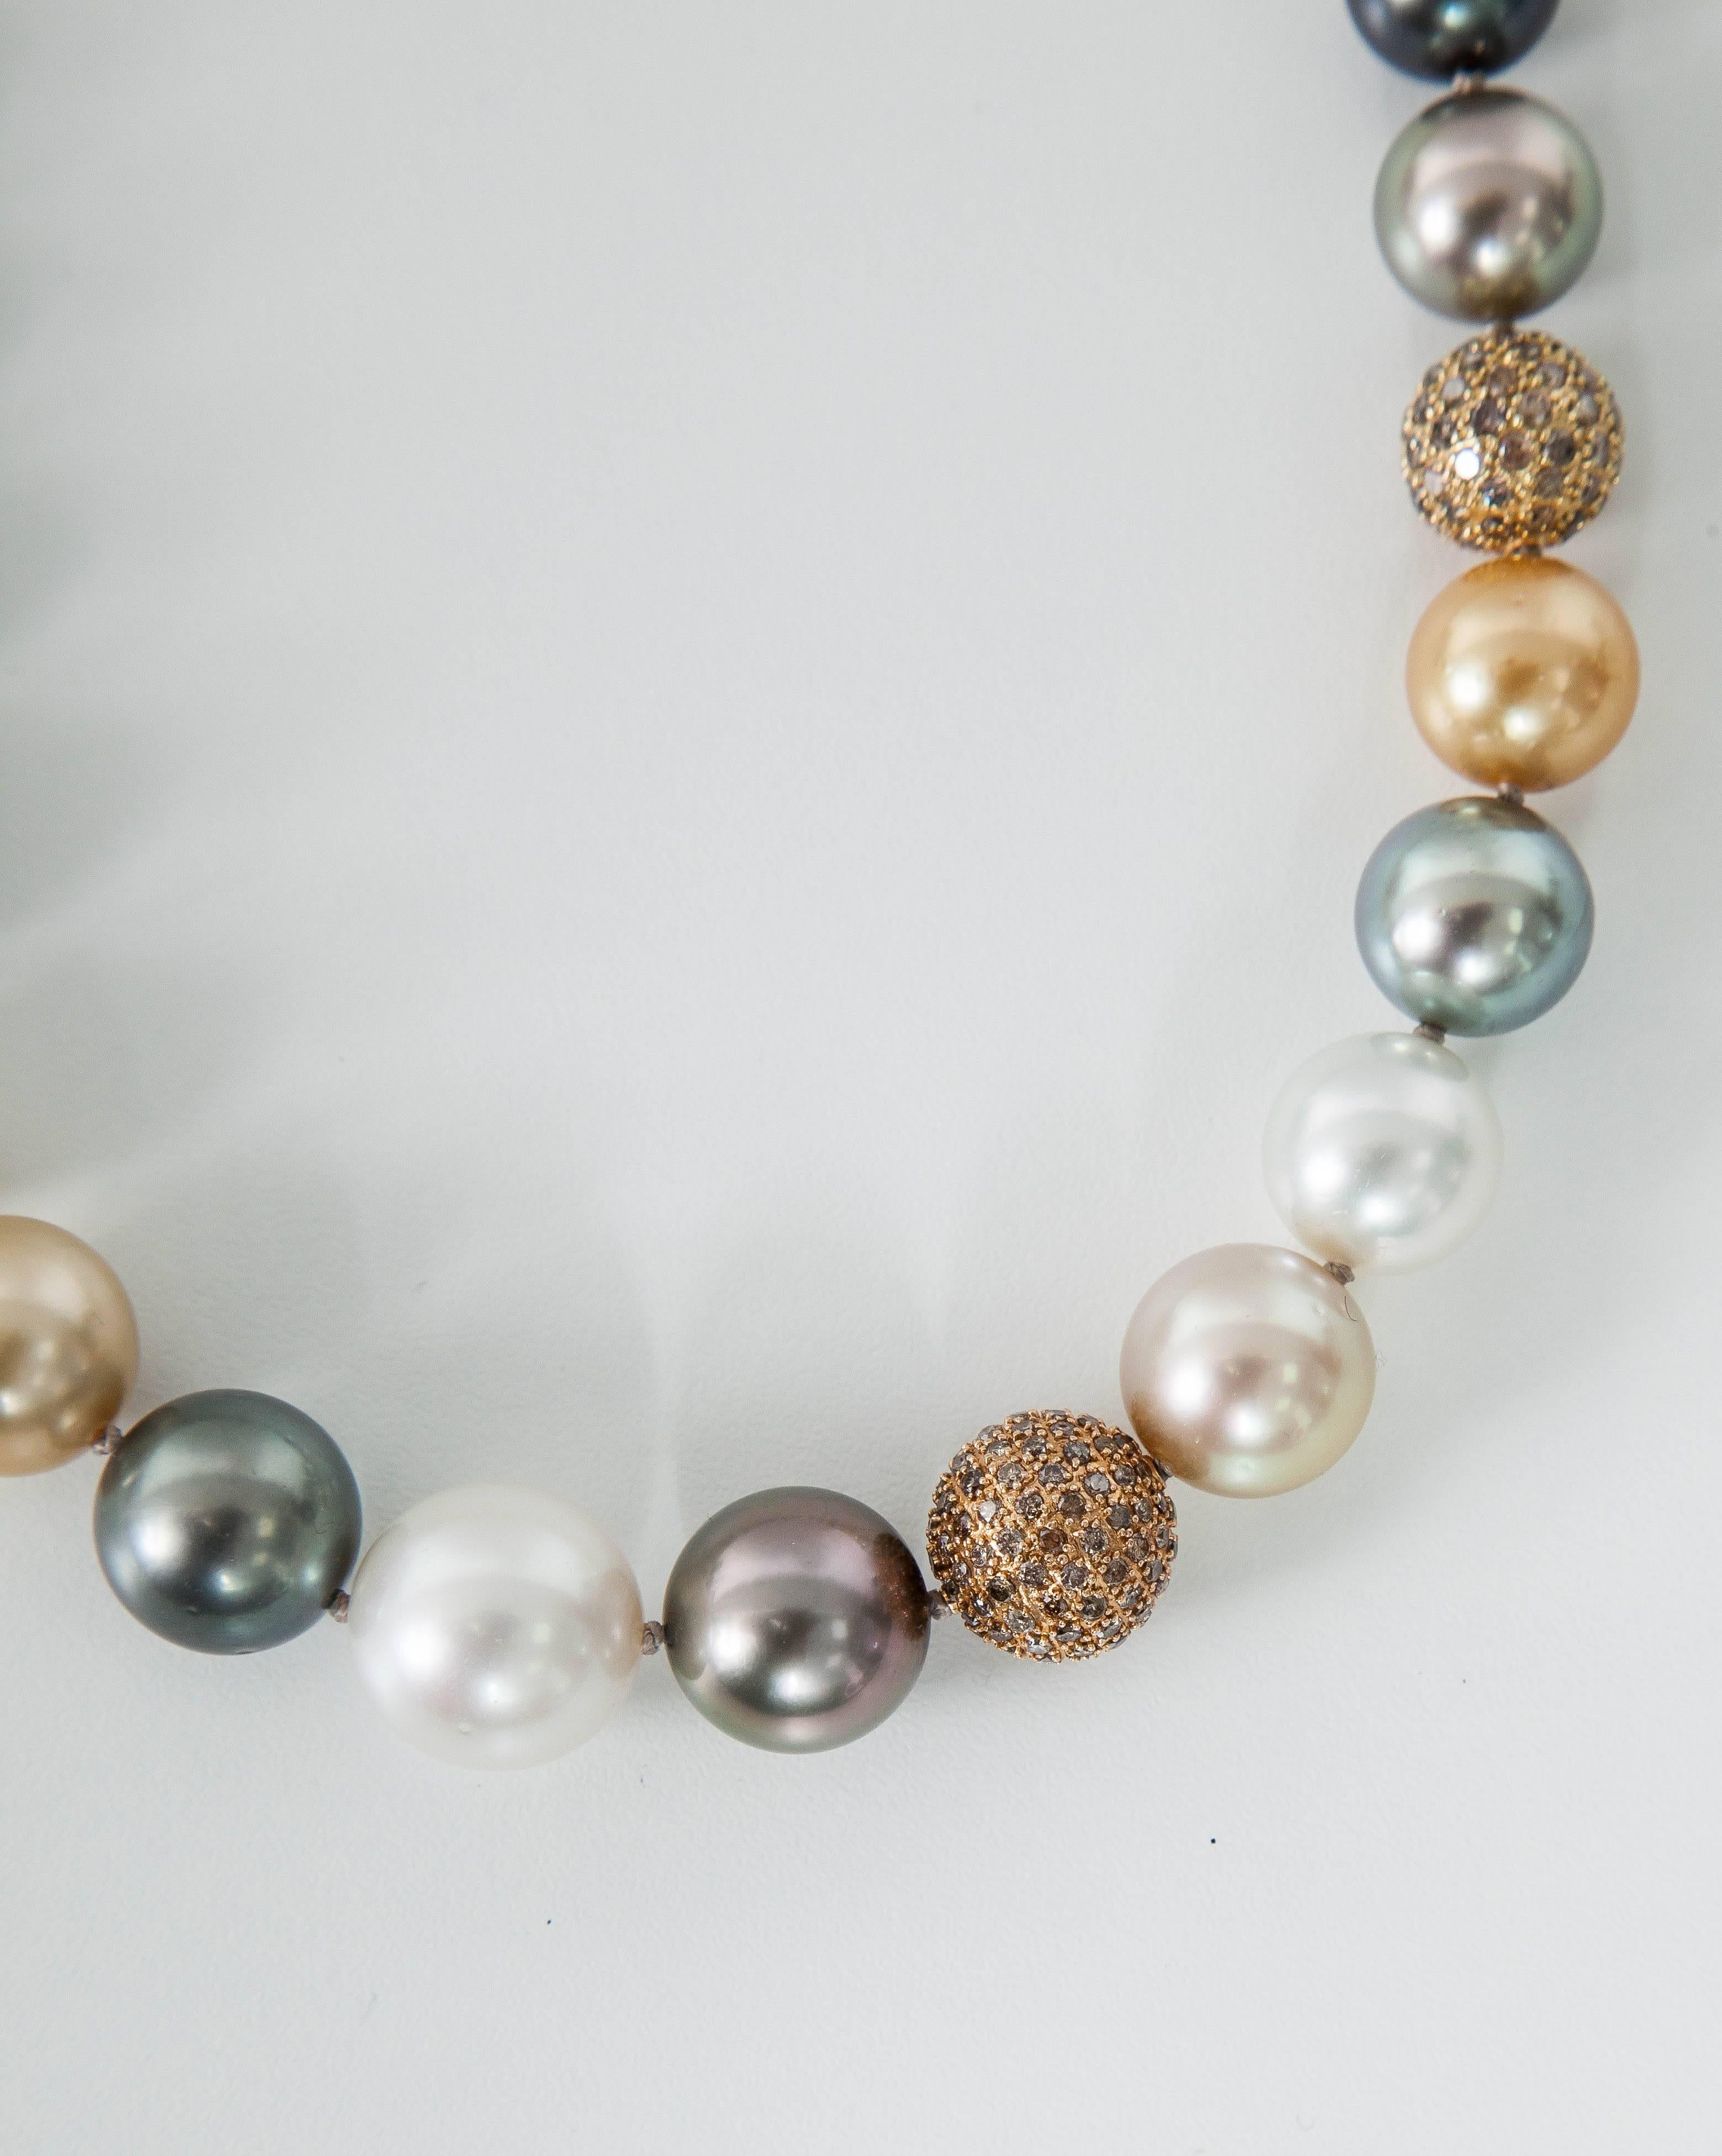 Diese erstaunliche Halskette Funktion:
Südsee kultiviert Multi Farbe Halskette ungefähre Größe 10,5 mm bis 14,5 mm
Anzahl der Perlen: 32Stück.
Perlenqualität: AA
Perlglanz: AA
Diamantkugeln: 7 Karat
Die Herkunft der Perlen sind: Australien,